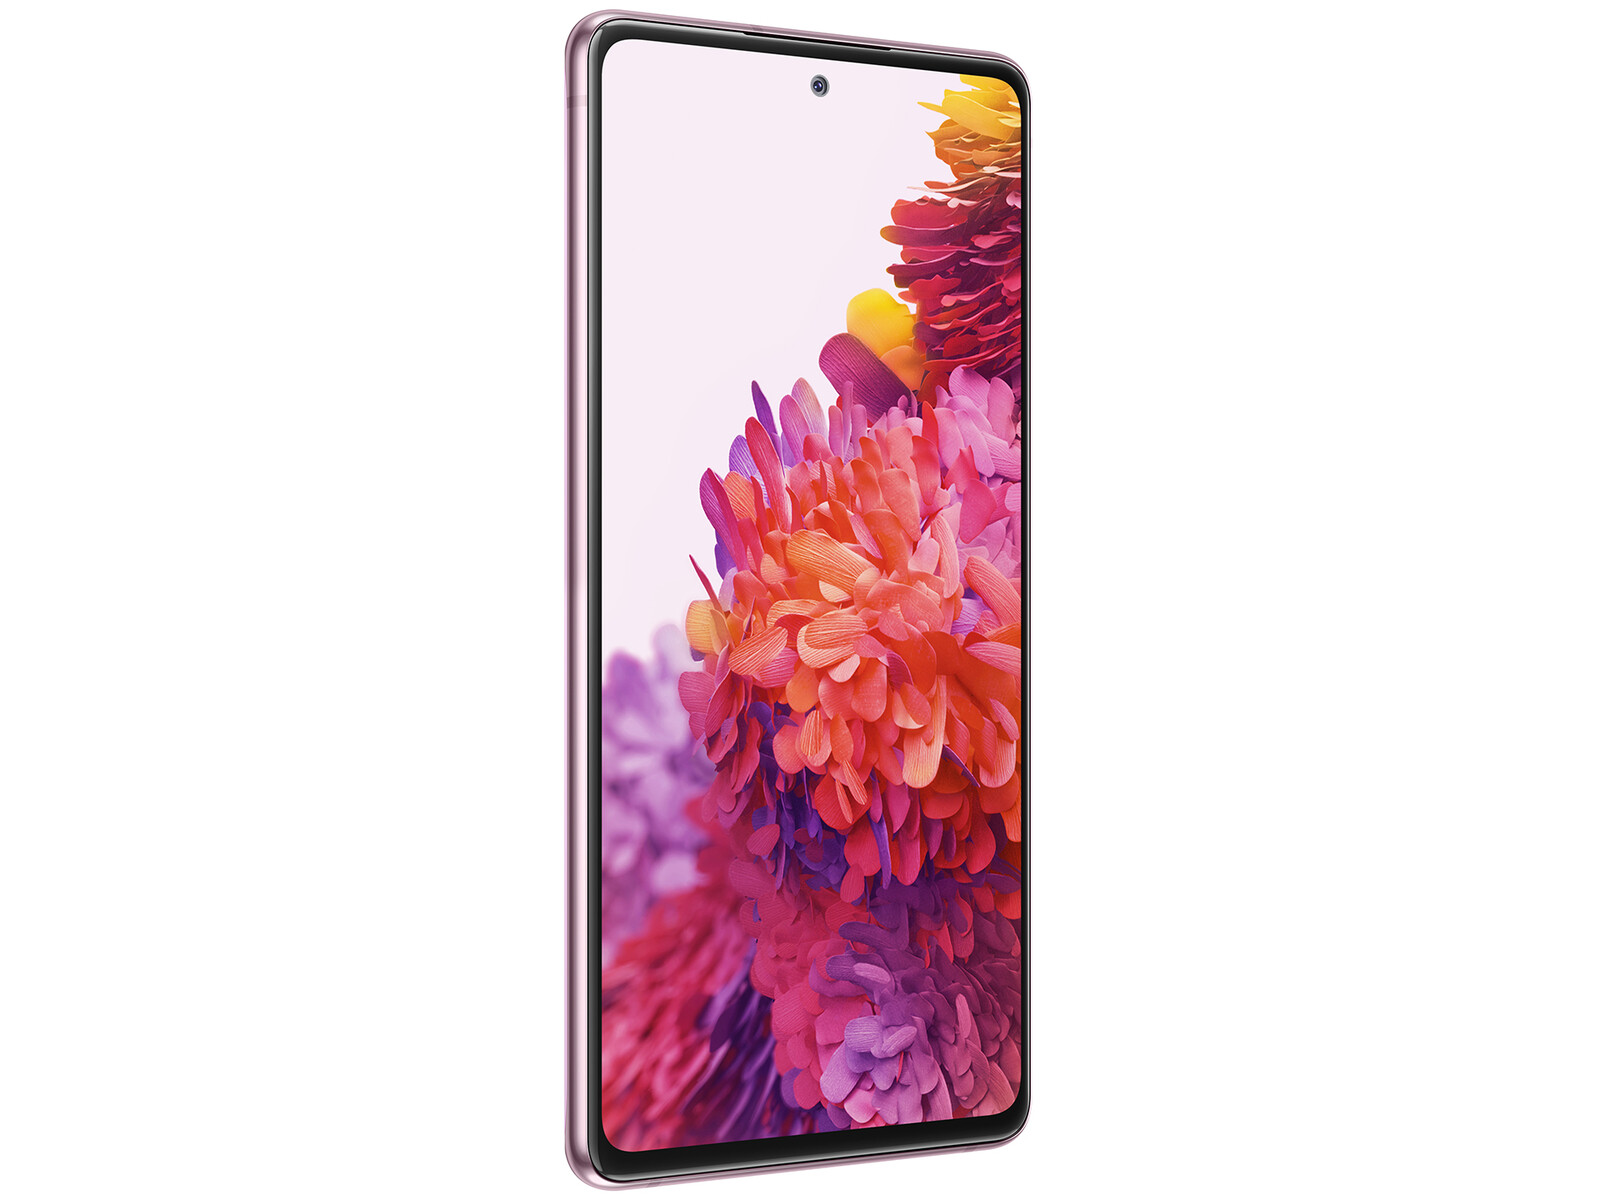 Samsung Galaxy S20 FE 5G: Với tốc độ và khả năng kết nối 5G, Samsung Galaxy S20 FE 5G là sự lựa chọn hoàn hảo. Xem đánh giá chi tiết về sản phẩm và các tính năng ấn tượng như màn hình 120Hz và camera chất lượng cao.